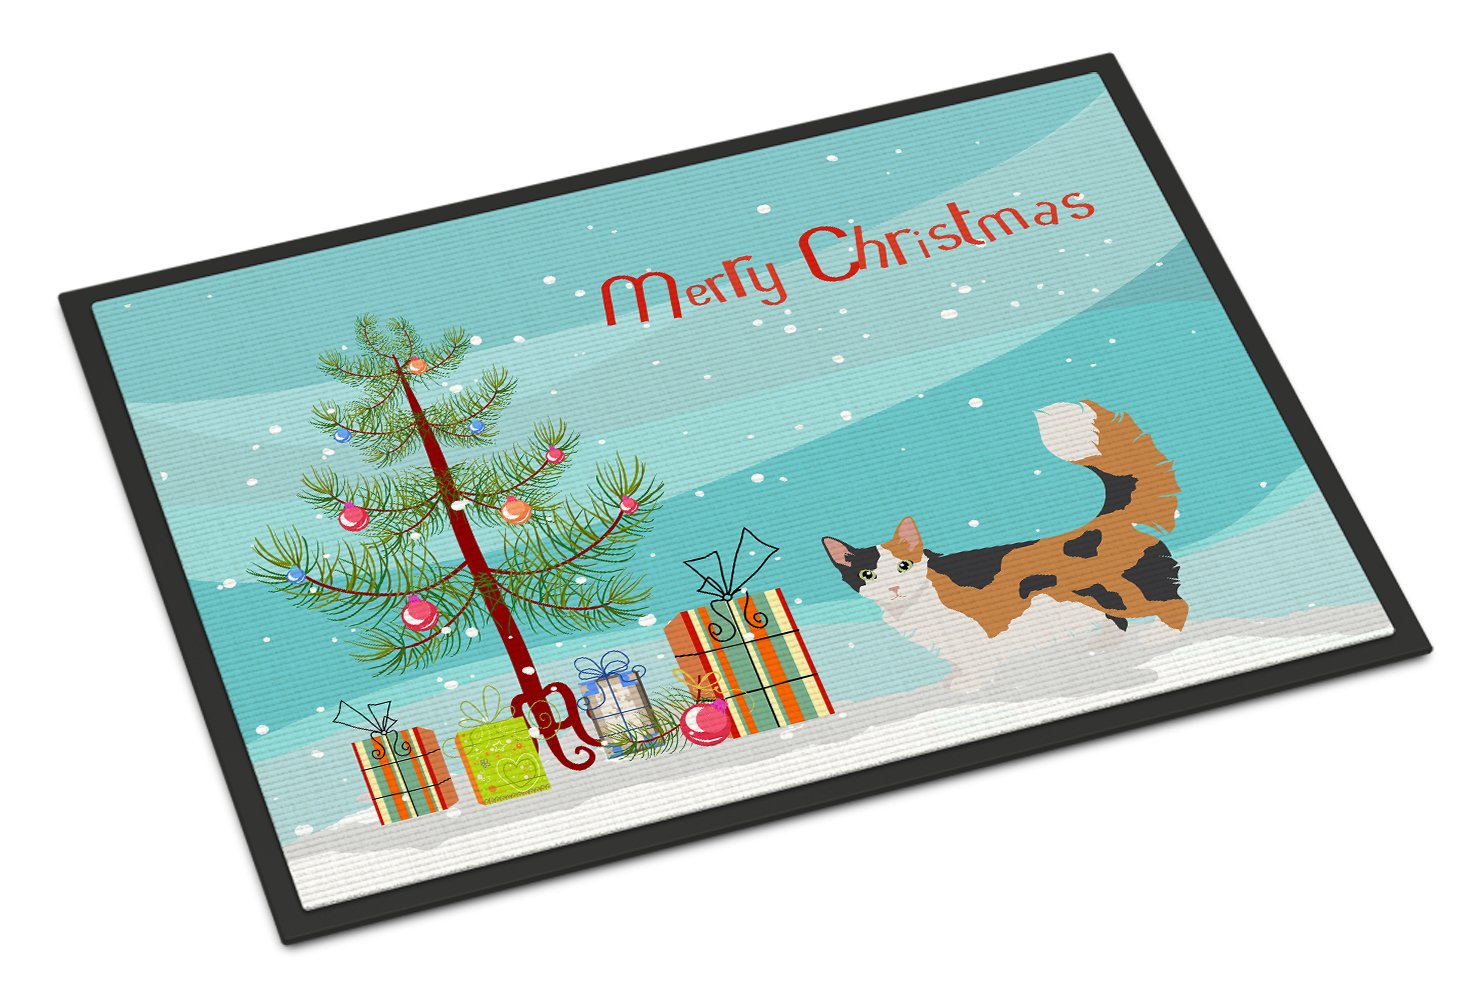 Skookum Cat Merry Christmas Indoor or Outdoor Mat 24x36 CK4717JMAT by Caroline's Treasures